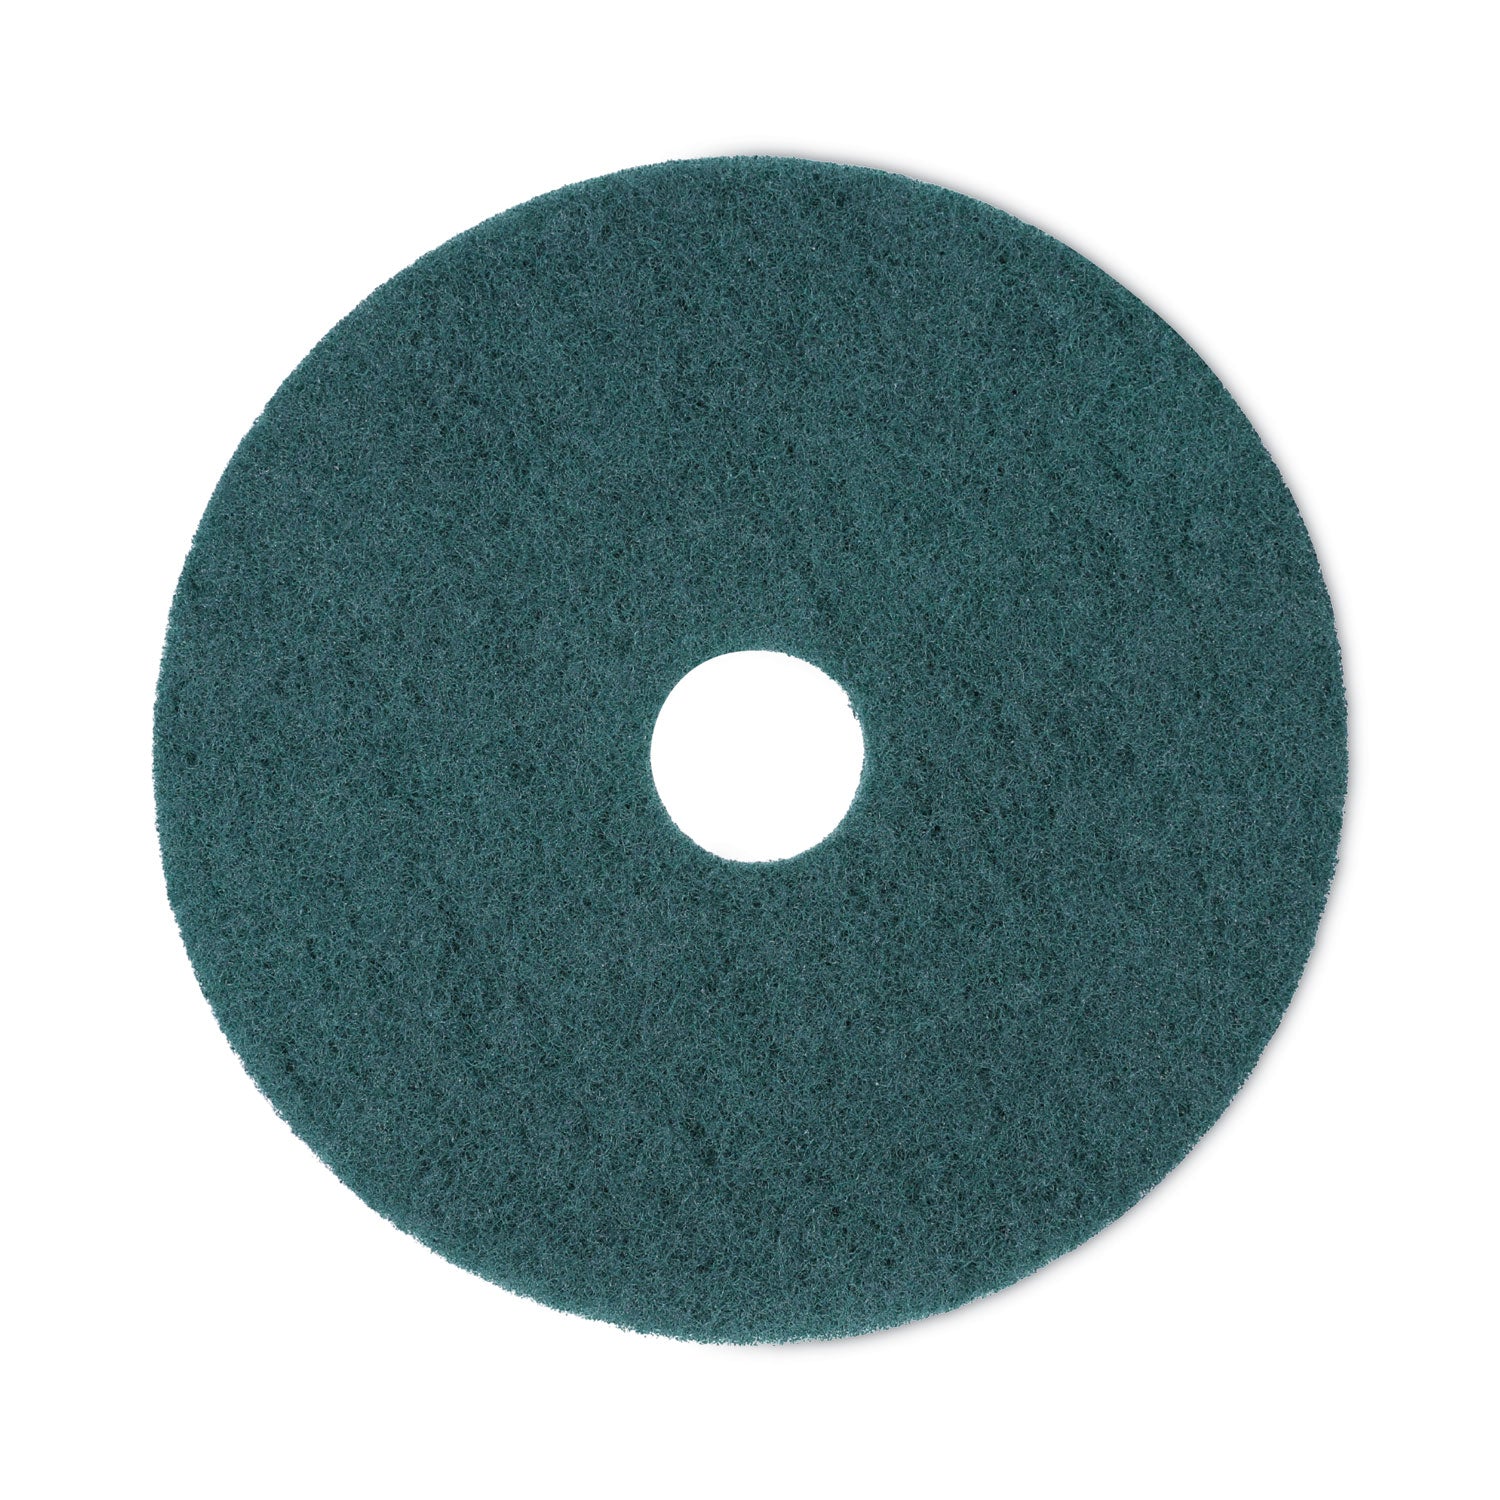 heavy-duty-scrubbing-floor-pads-18-diameter-green-5-carton_bwk4018gre - 1